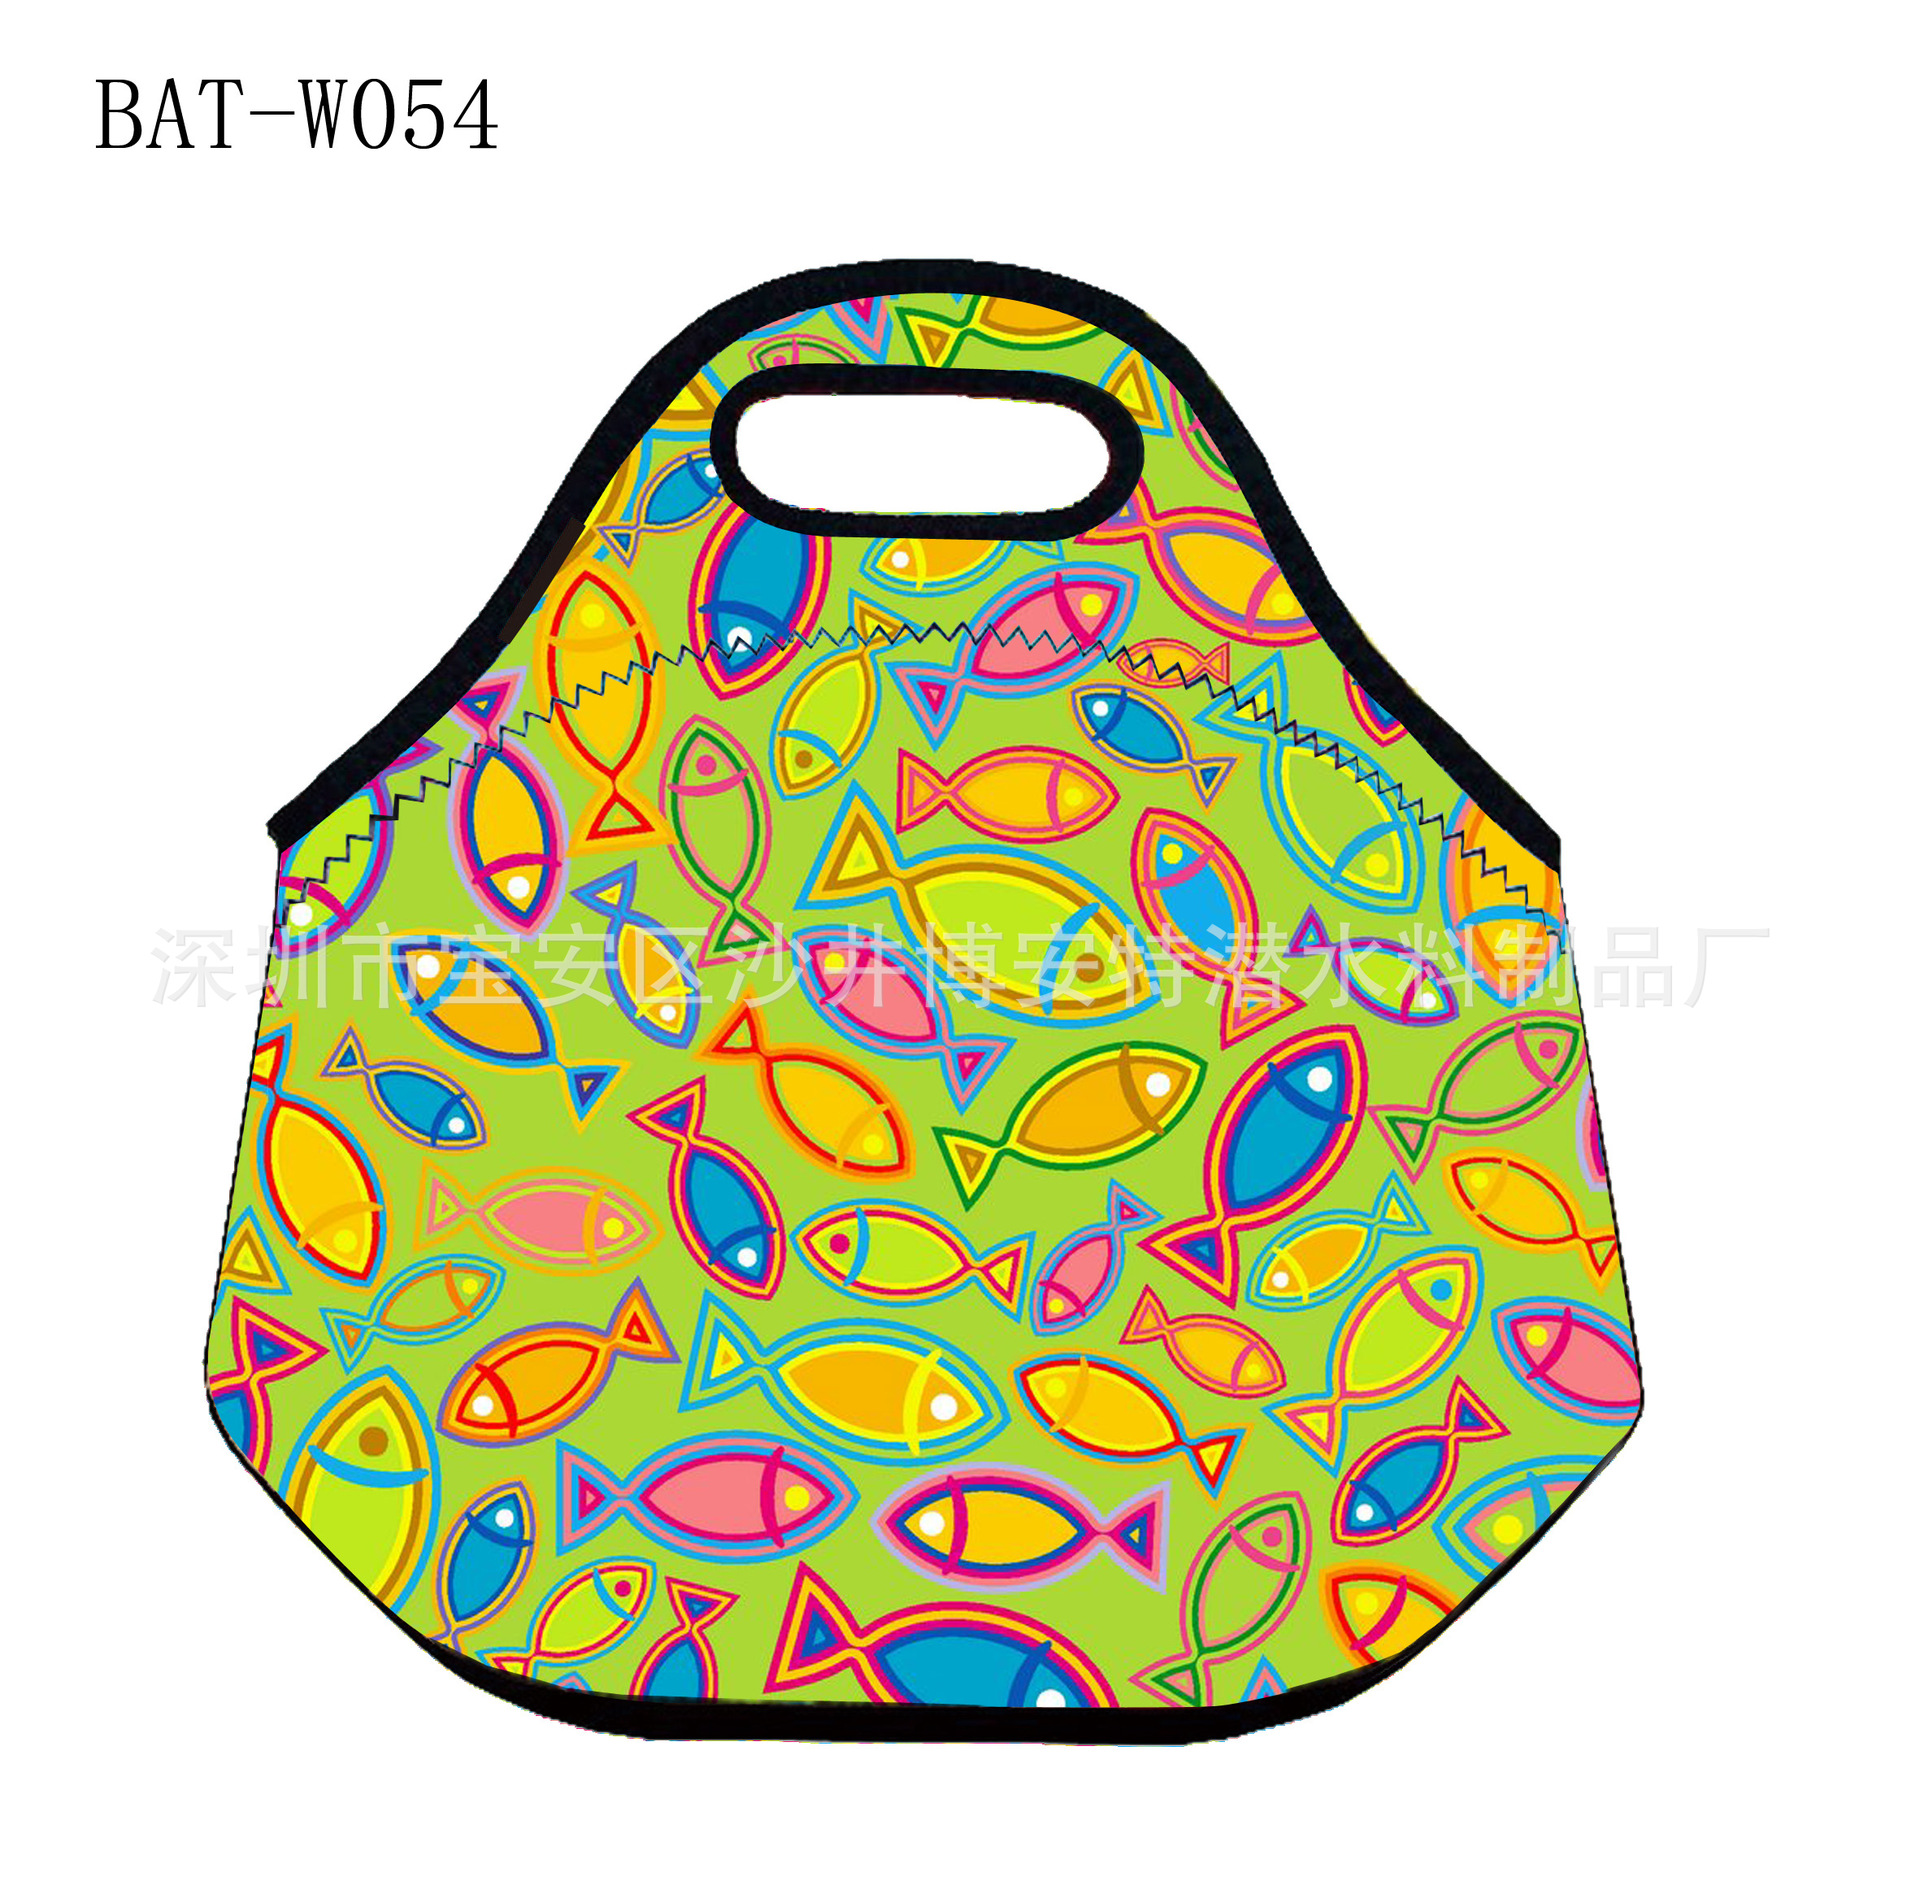 BAT-W054